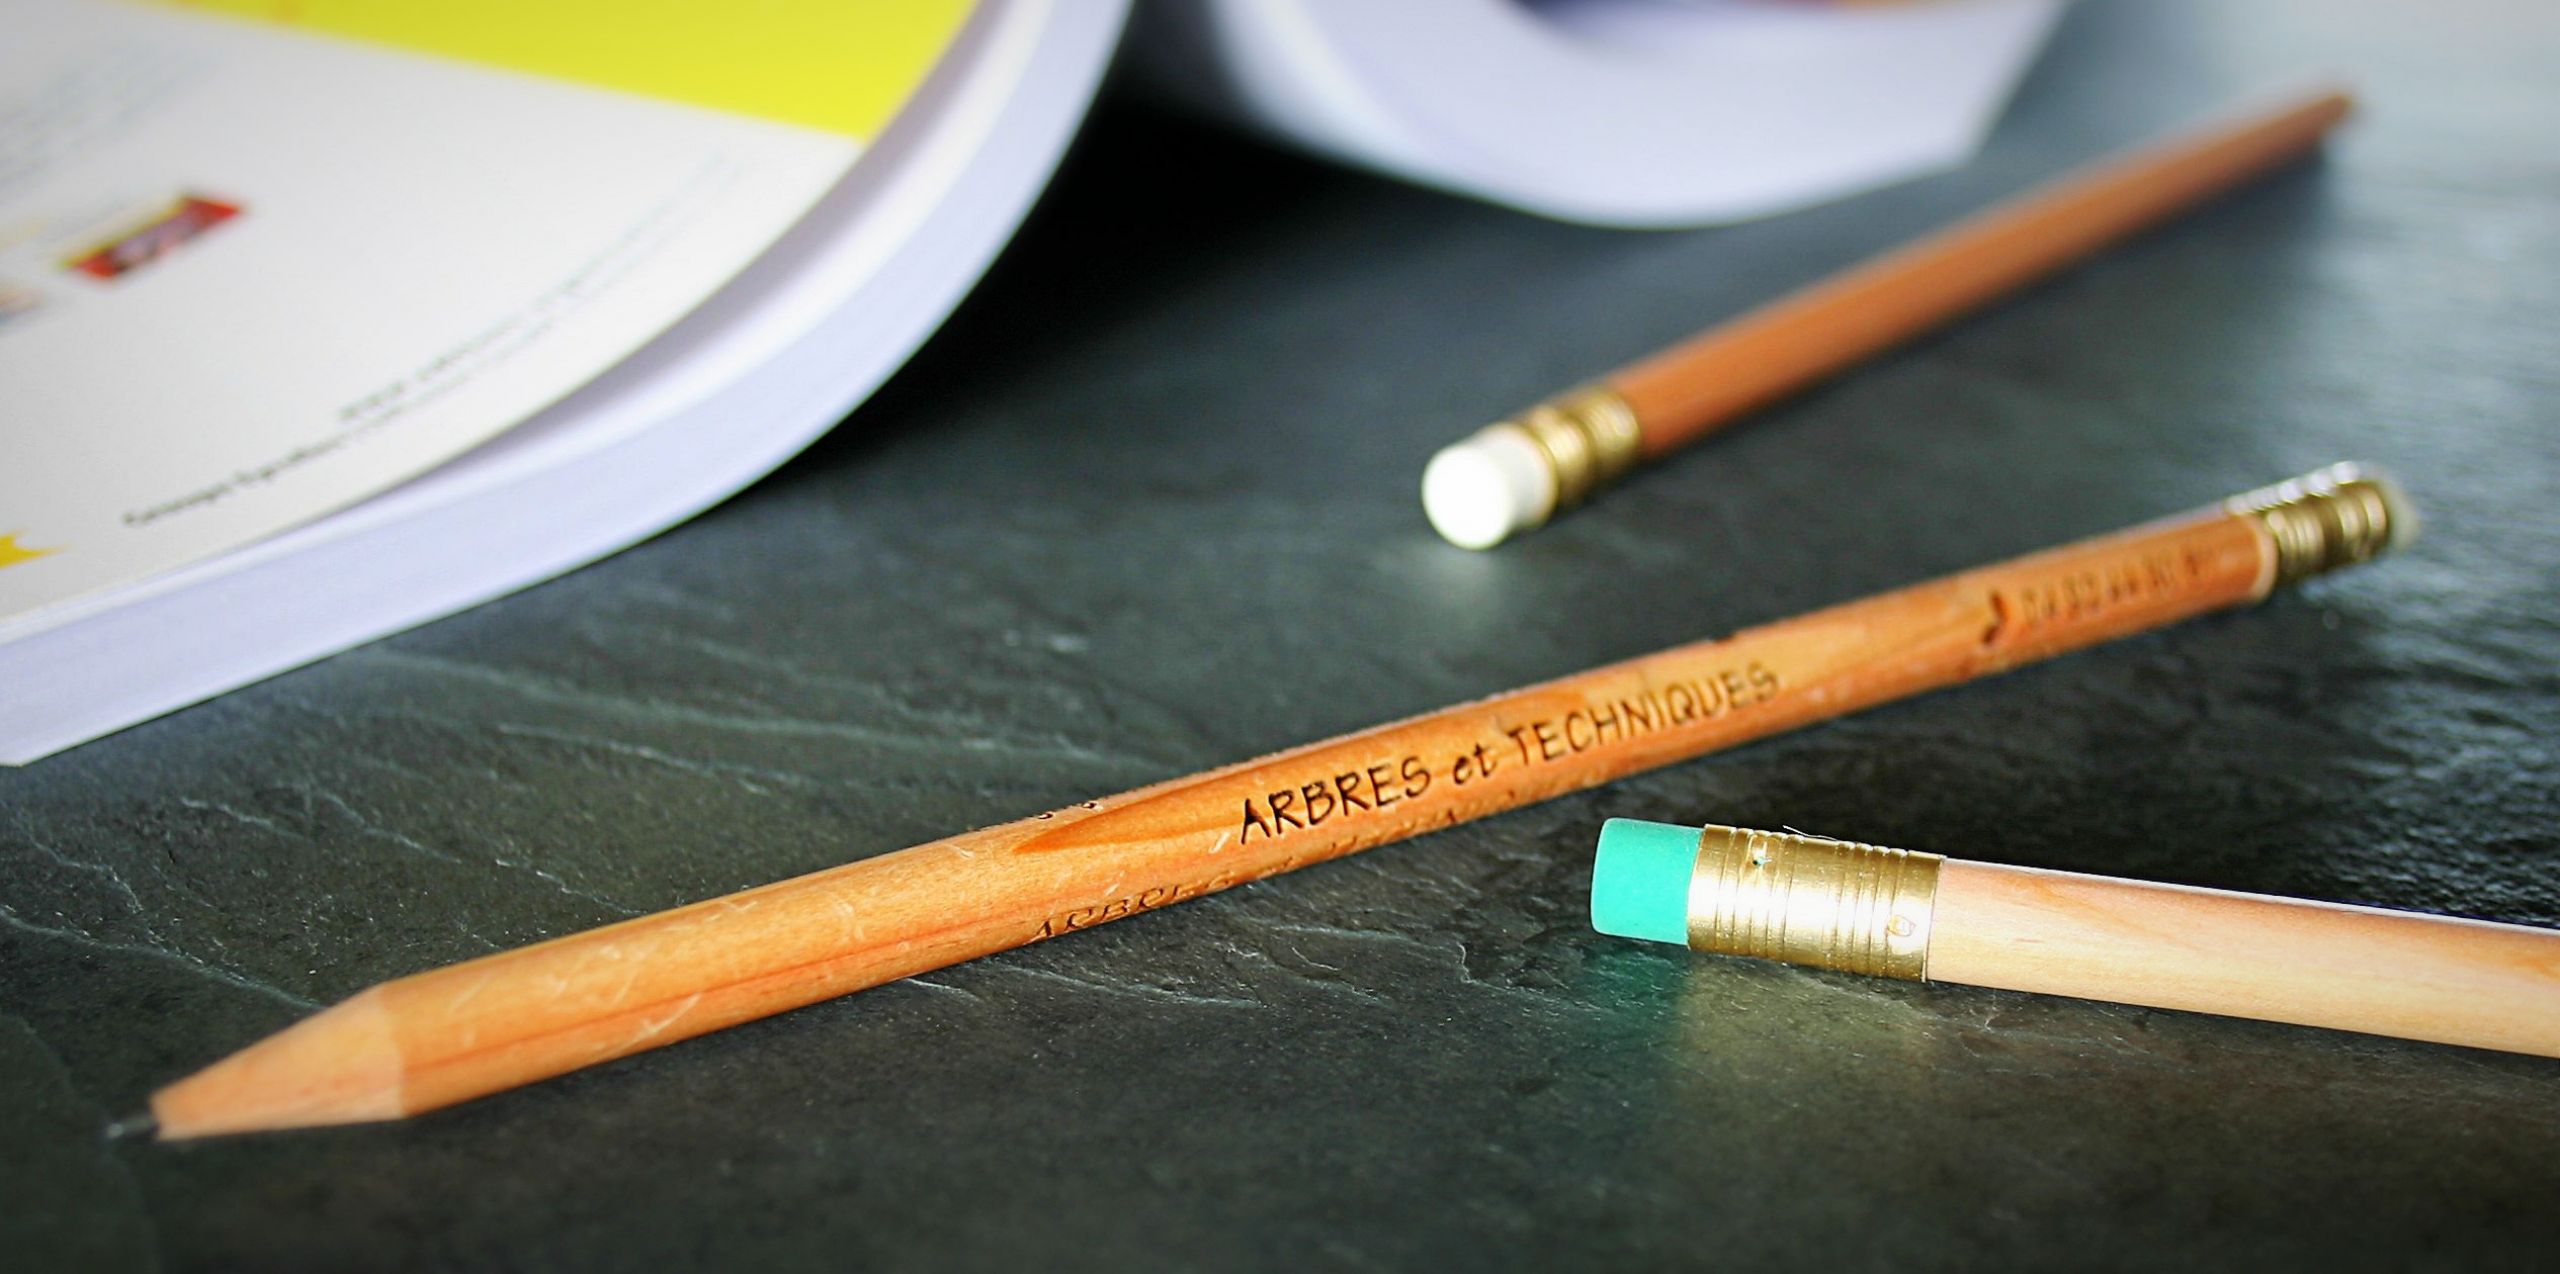 Crayon en bois personnalisable